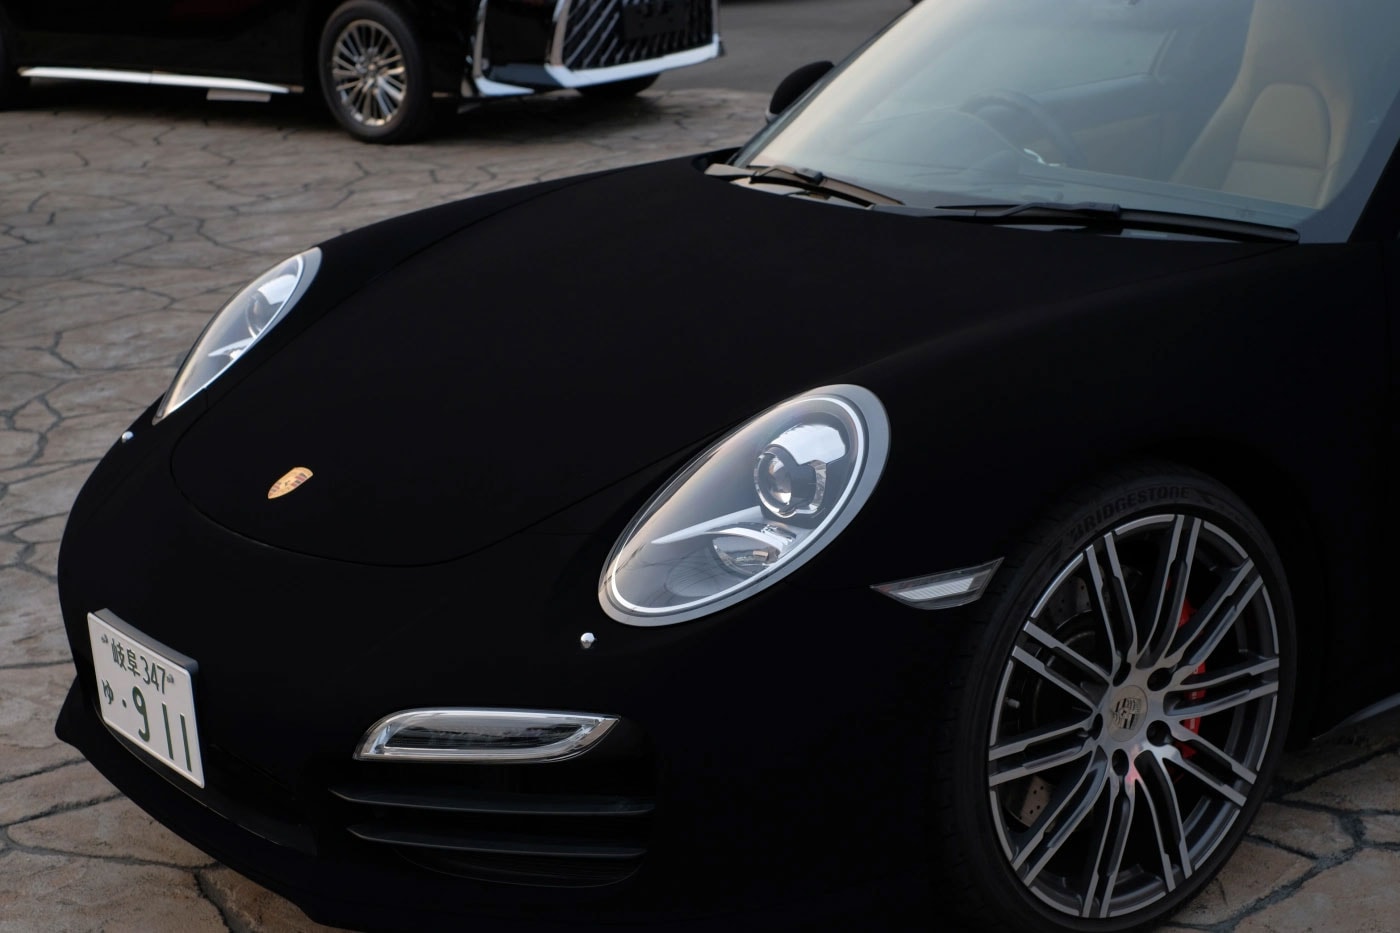 日本企業開発の“世界一黒い塗料”で仕上げられたポルシェ 911 が話題に Pit One Covers a Porsche 911 in the World's Blackest Paint koyo orient auto shop darkest car video vantablack purchase test info